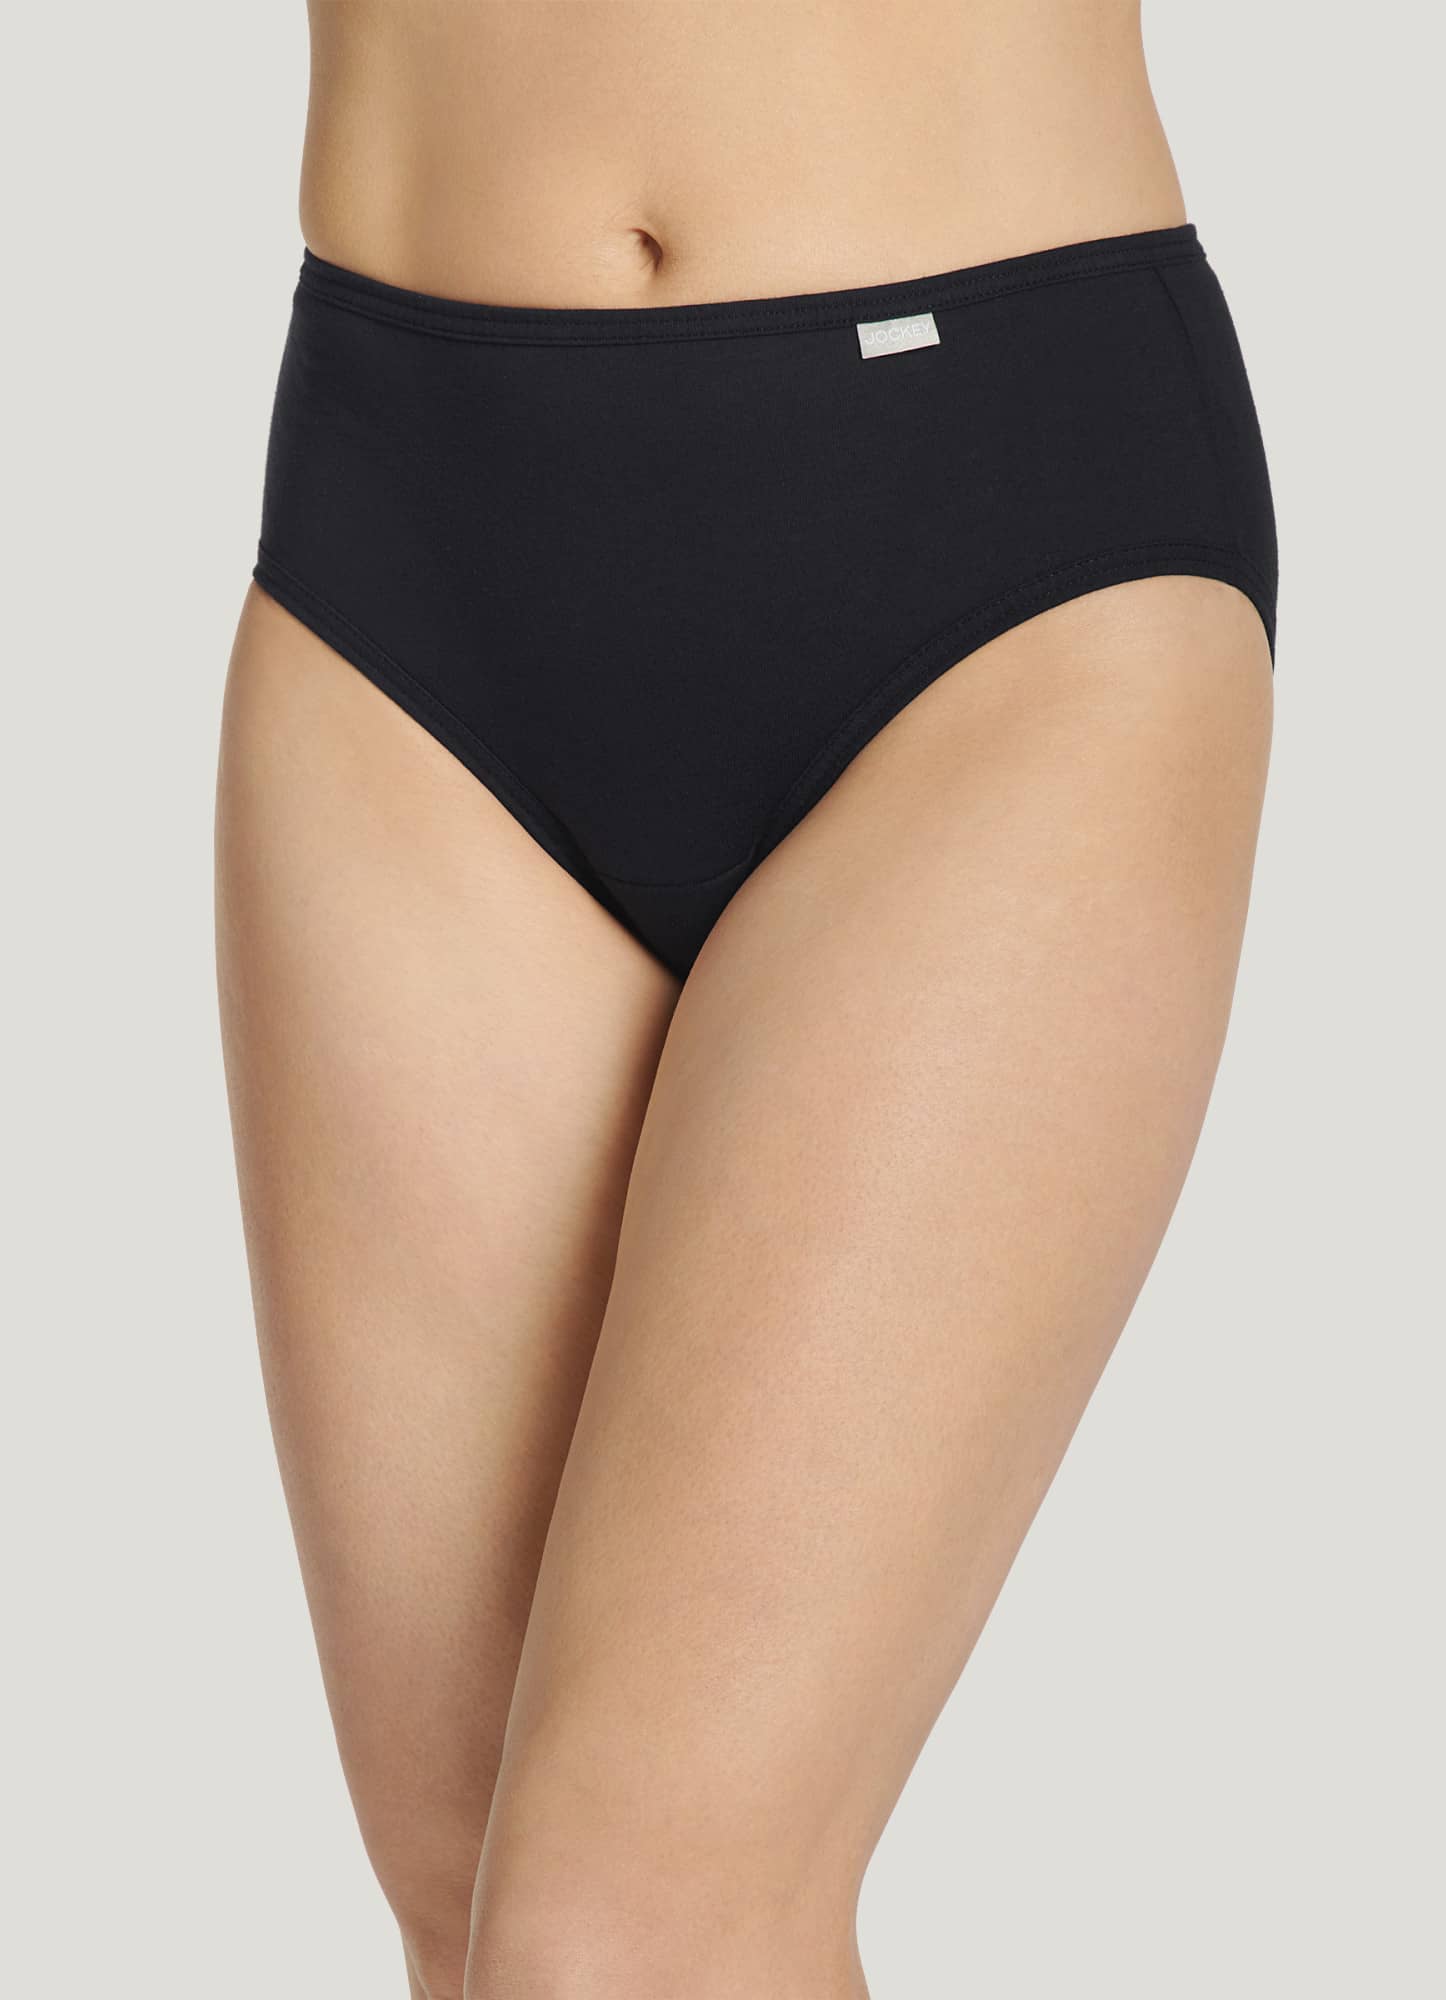 Jockey Women's Underwear Plus Size Elance Brief - 6 Pack, Grey